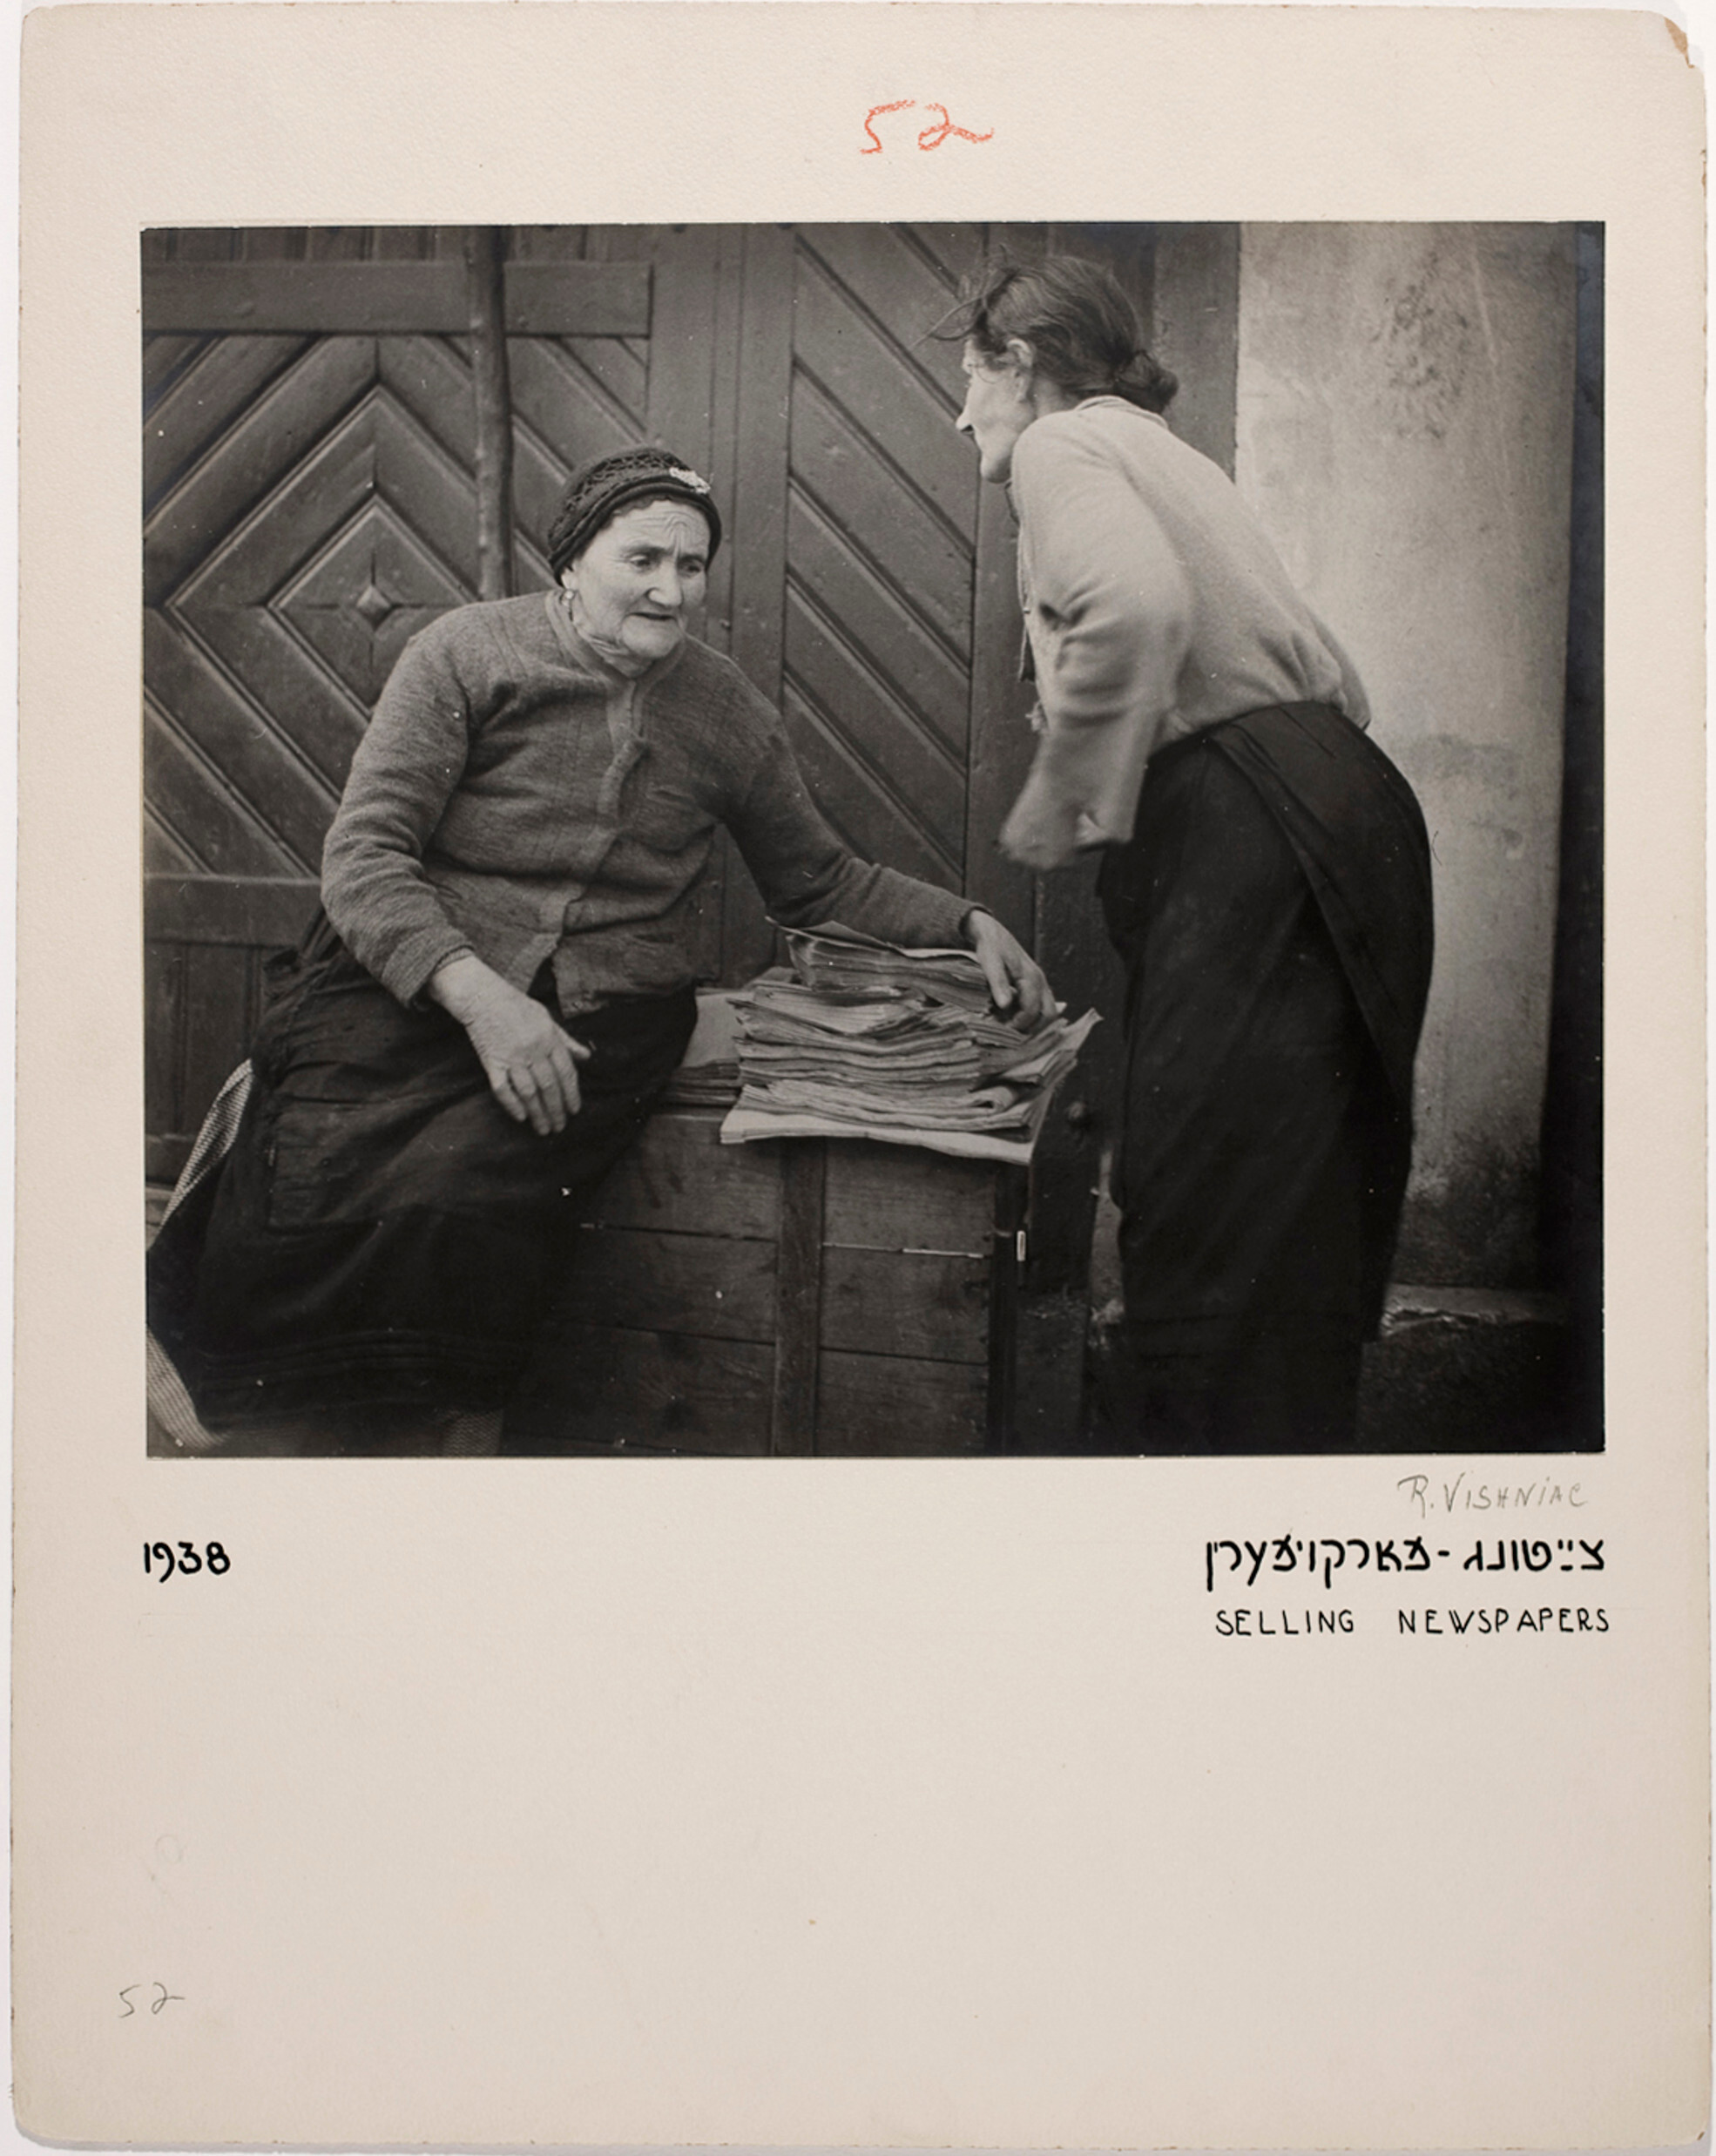 Продажа газет, Восточная Европа, ок. 1935-38 гг. Фотограф Роман Вишняк